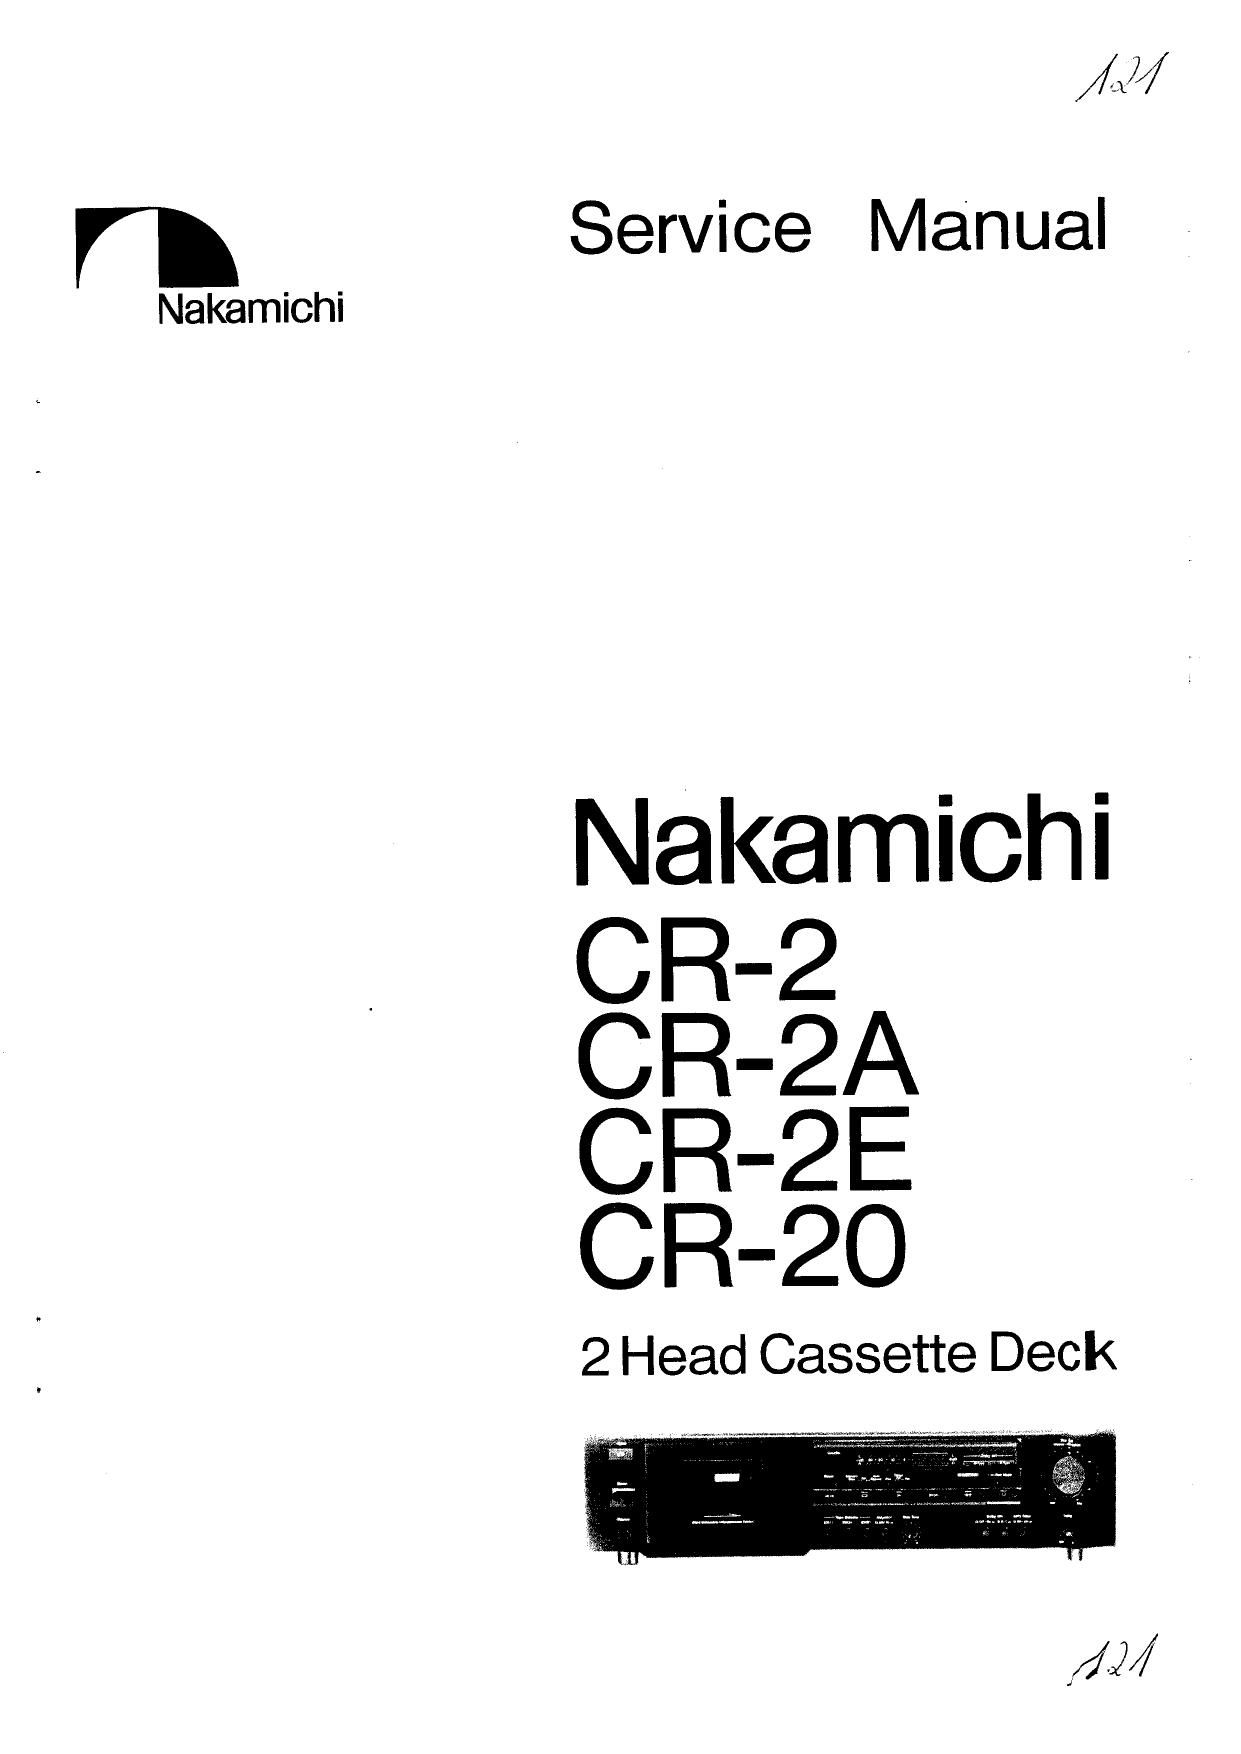 Nakamichi CR 20 Service Manual